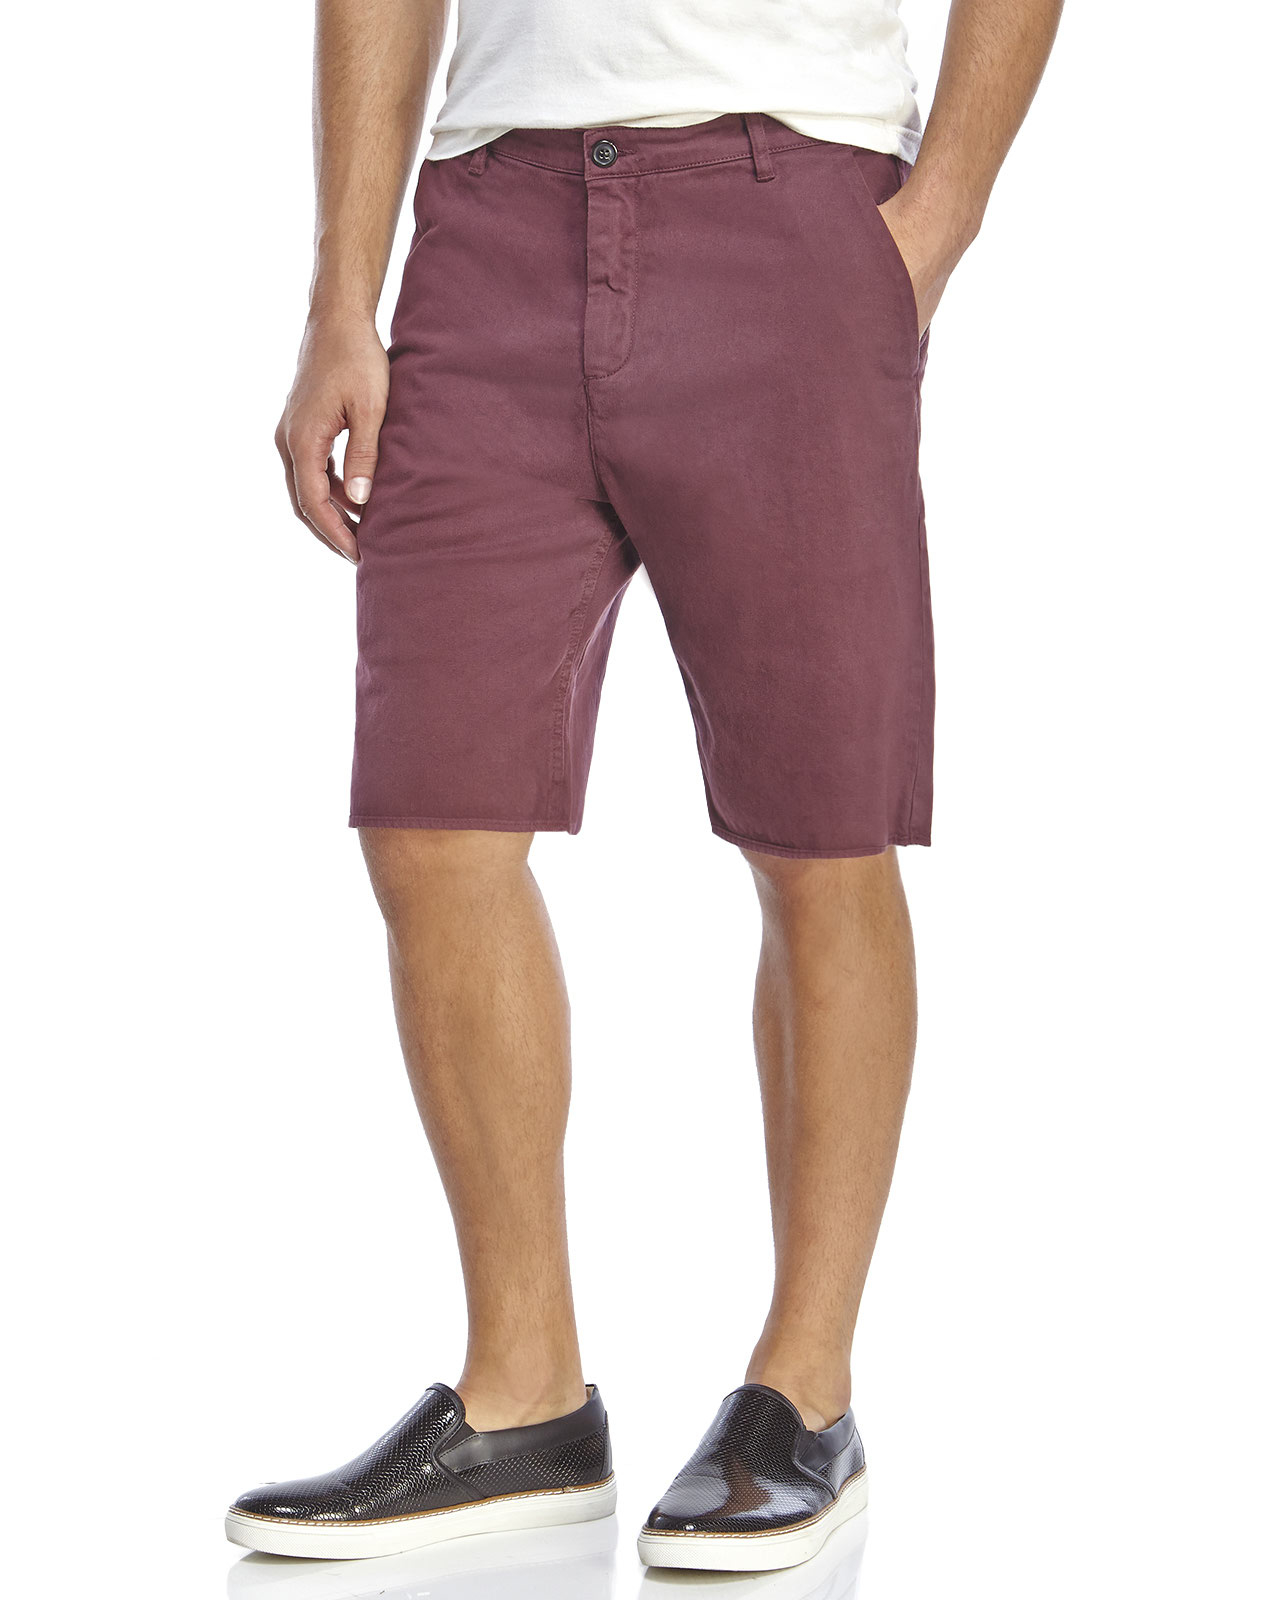 Lyst - Lot78 Slouch Denim Shorts in Purple for Men